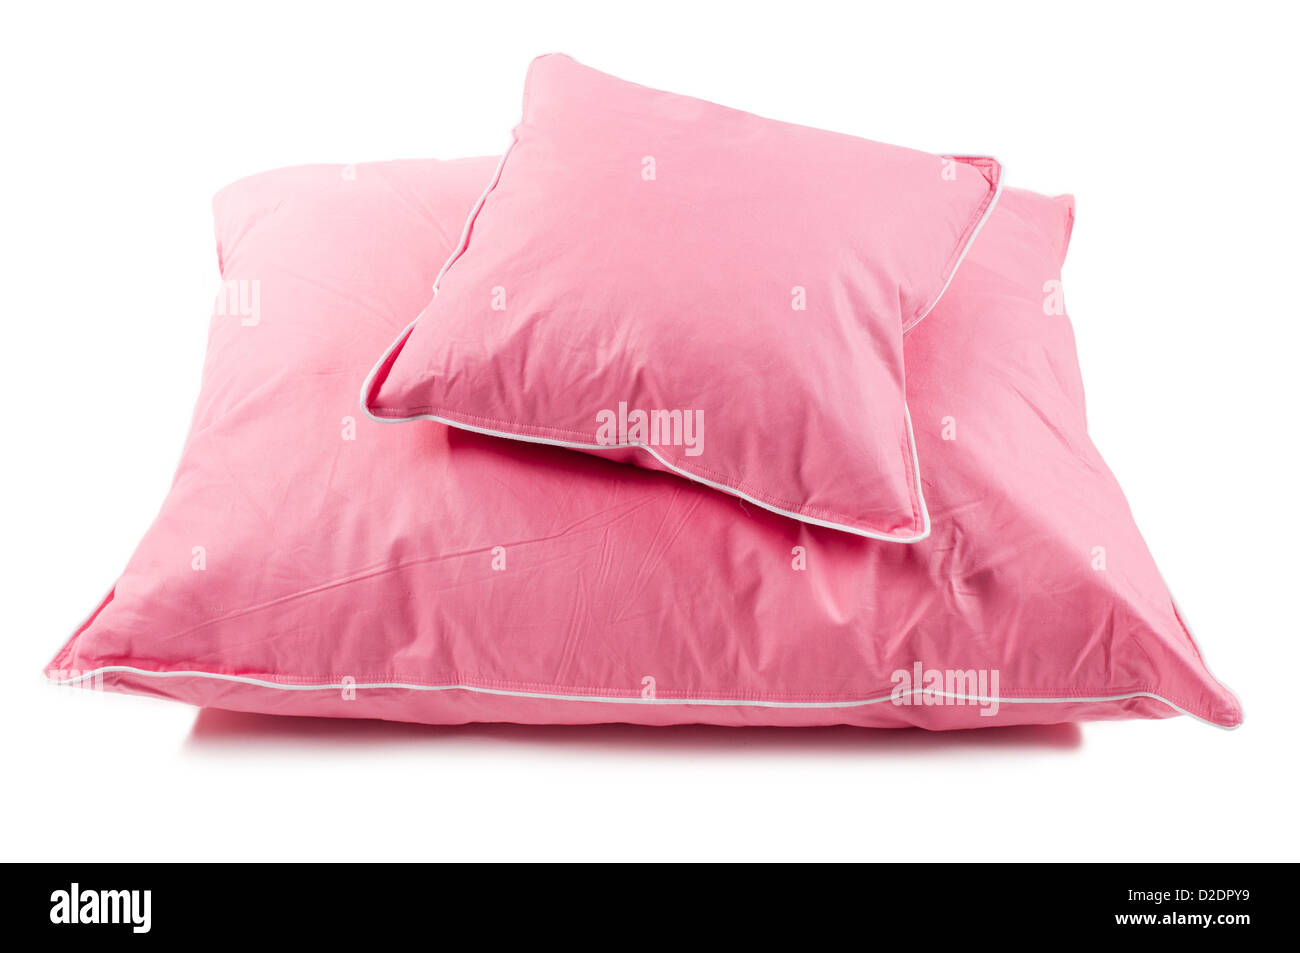 Dos almohadas mullidas de algodón sin cubierta Foto de stock